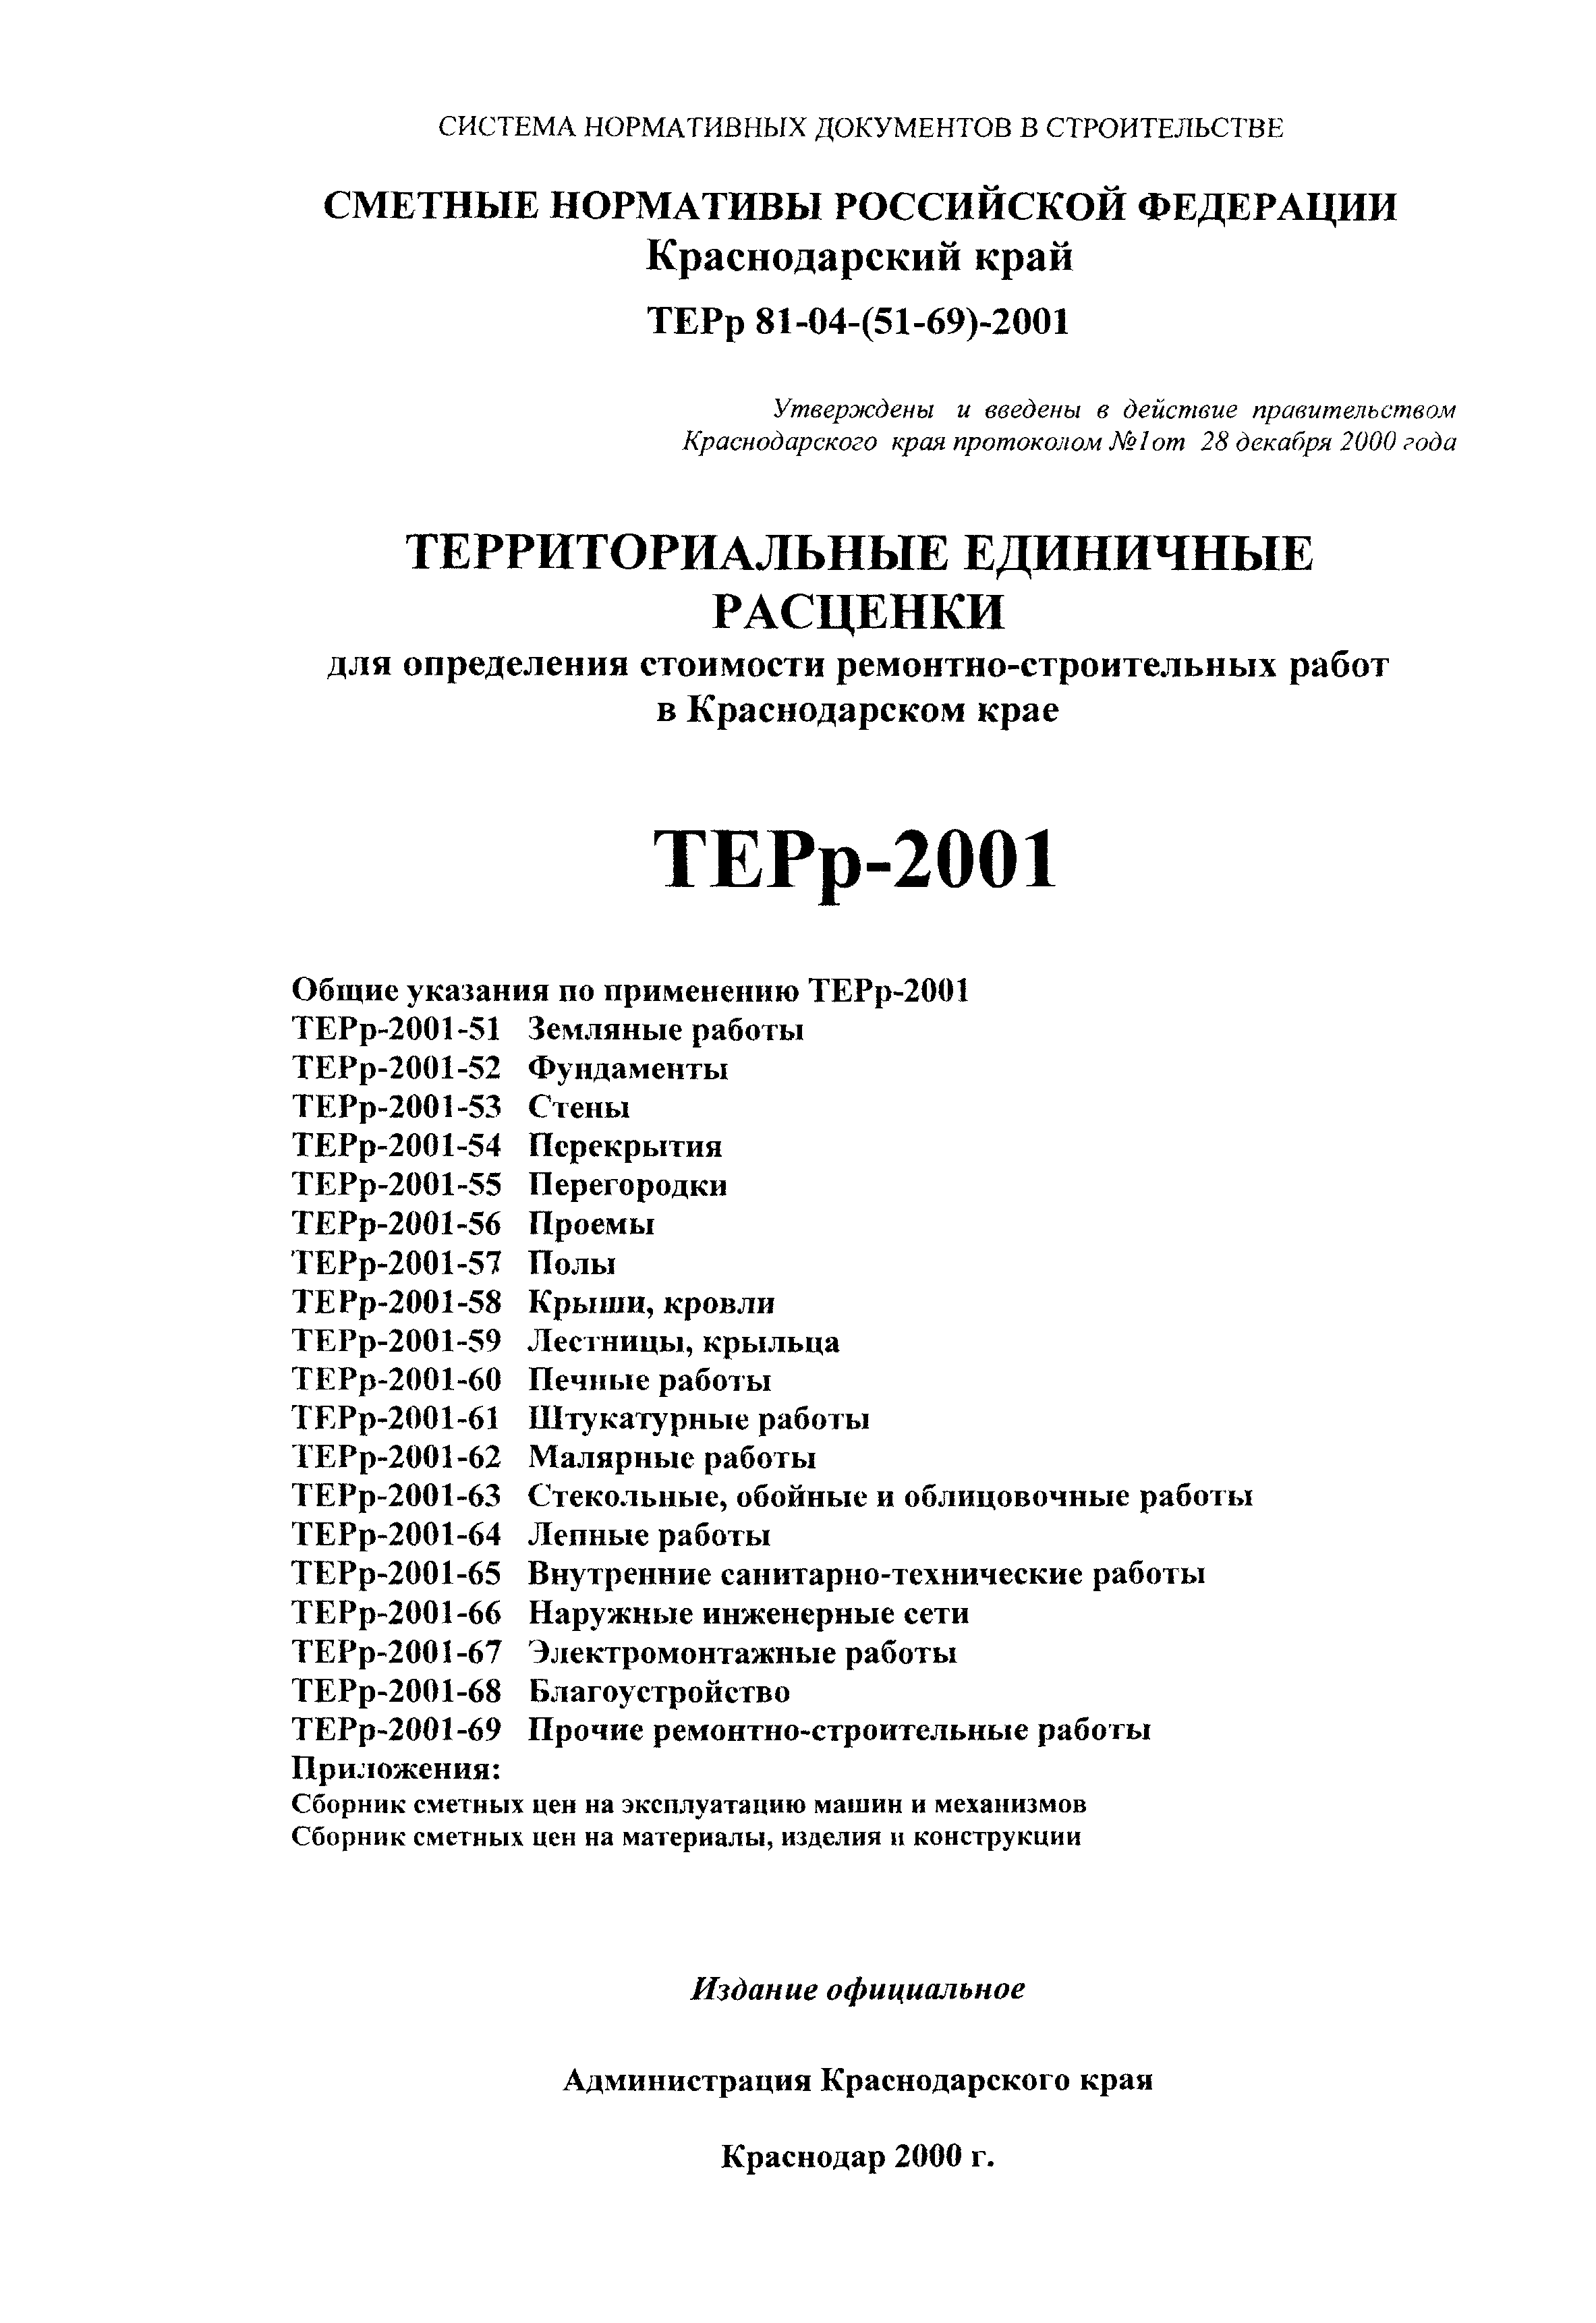 ТЕРр Краснодарского края 2001-55